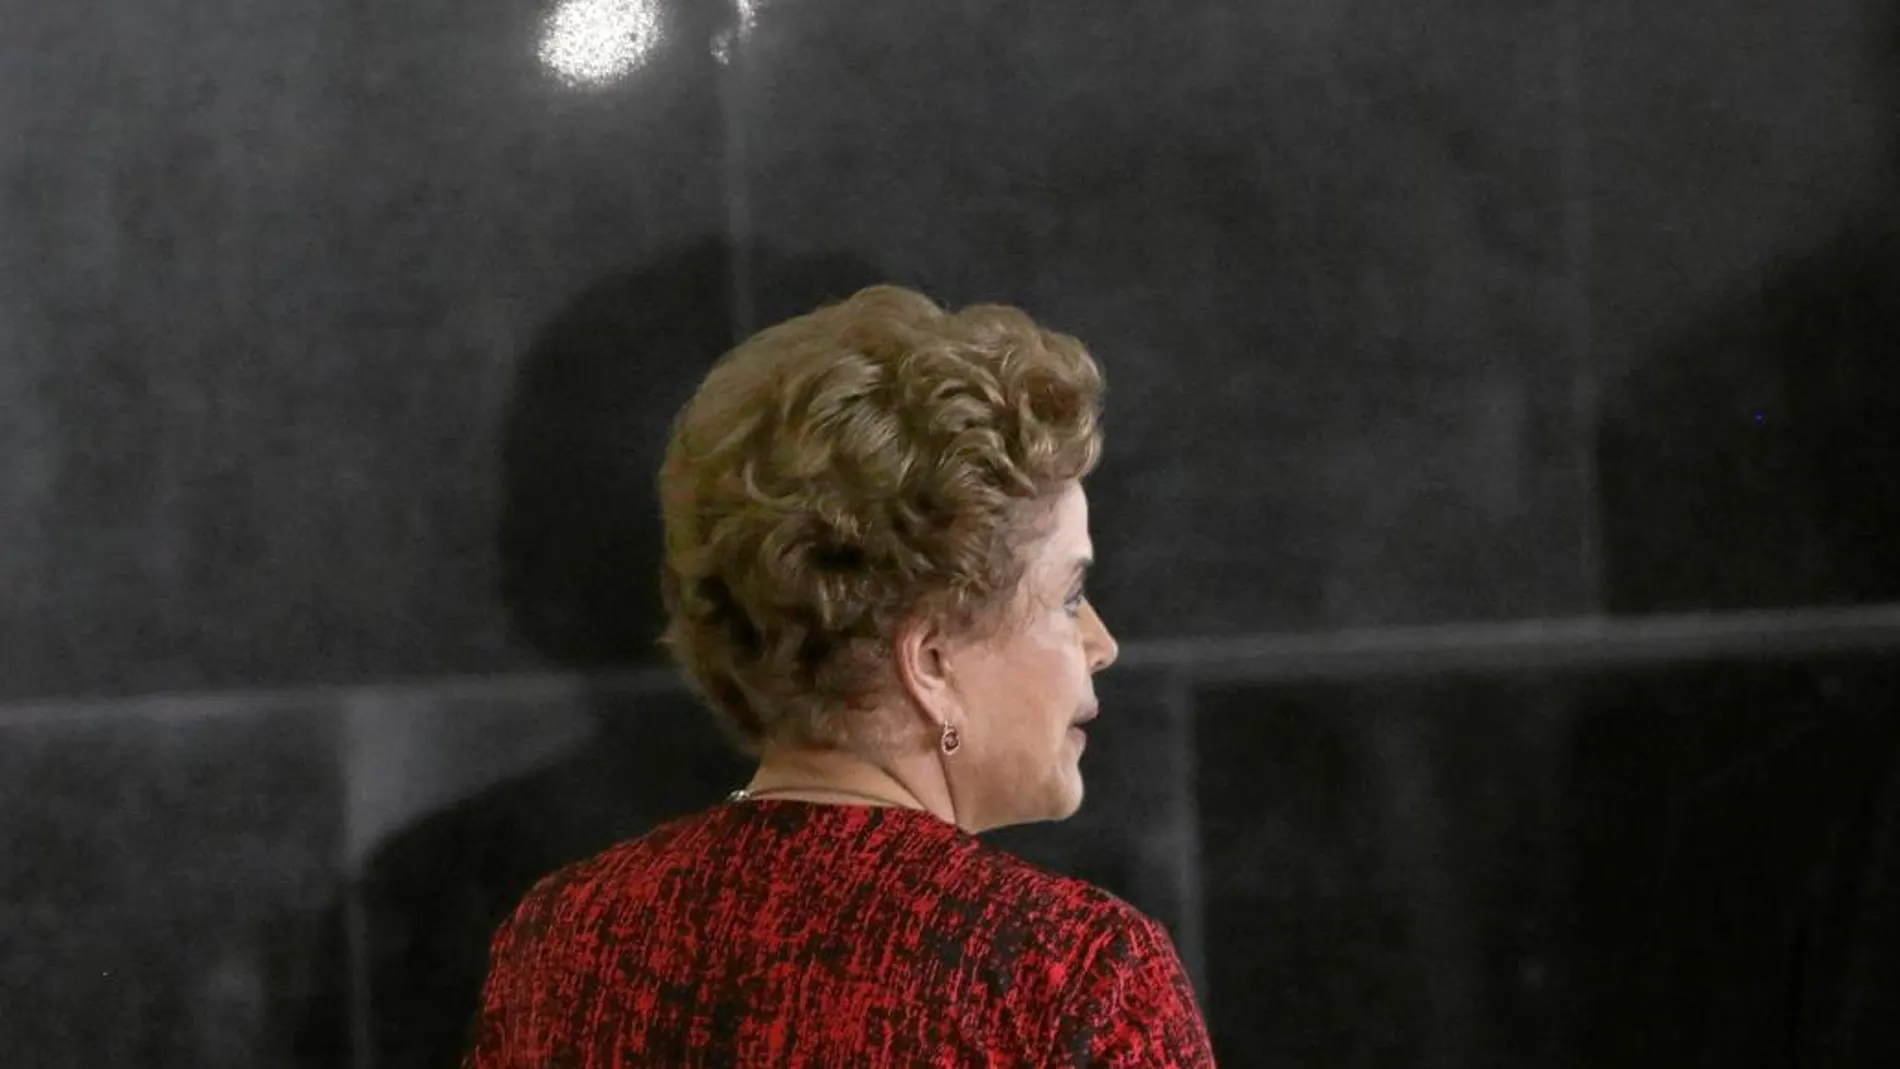 Una grabación revela cómo Rousseff intentó evitar la posible detención de Lula